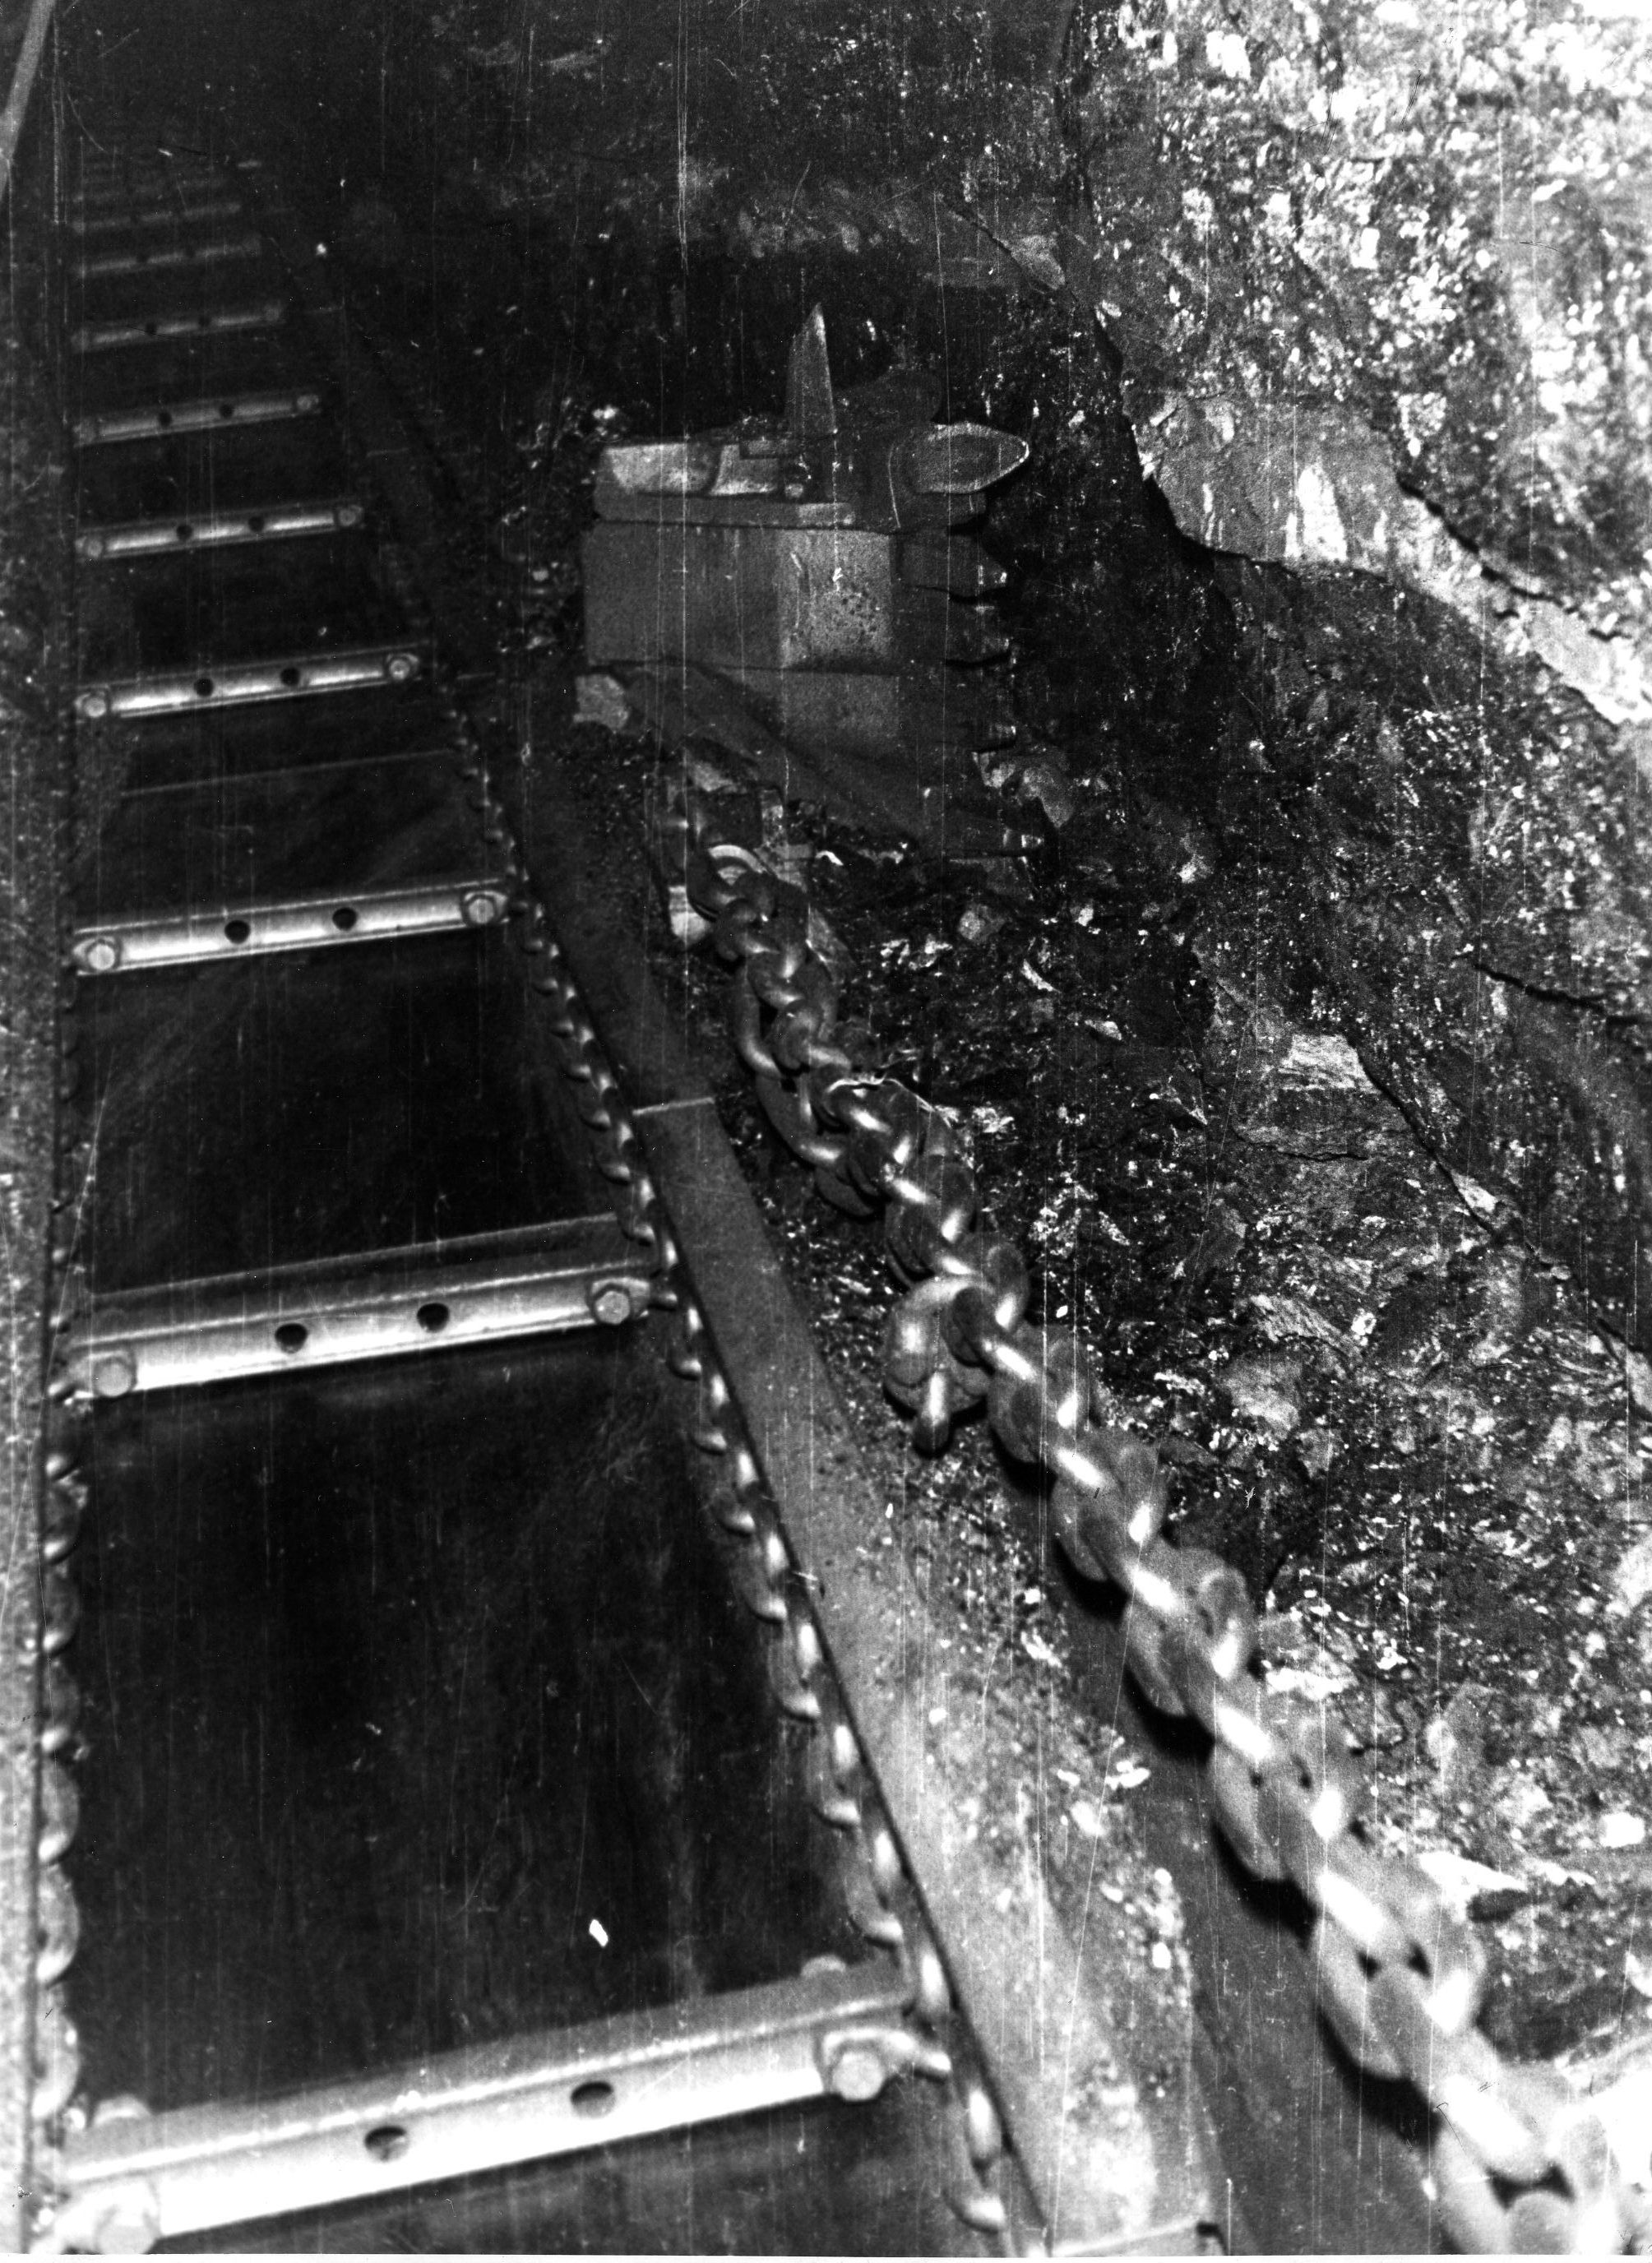 Komló Láncos vonszoló széngyaluval - bányatechnológiák, Kossuth bánya